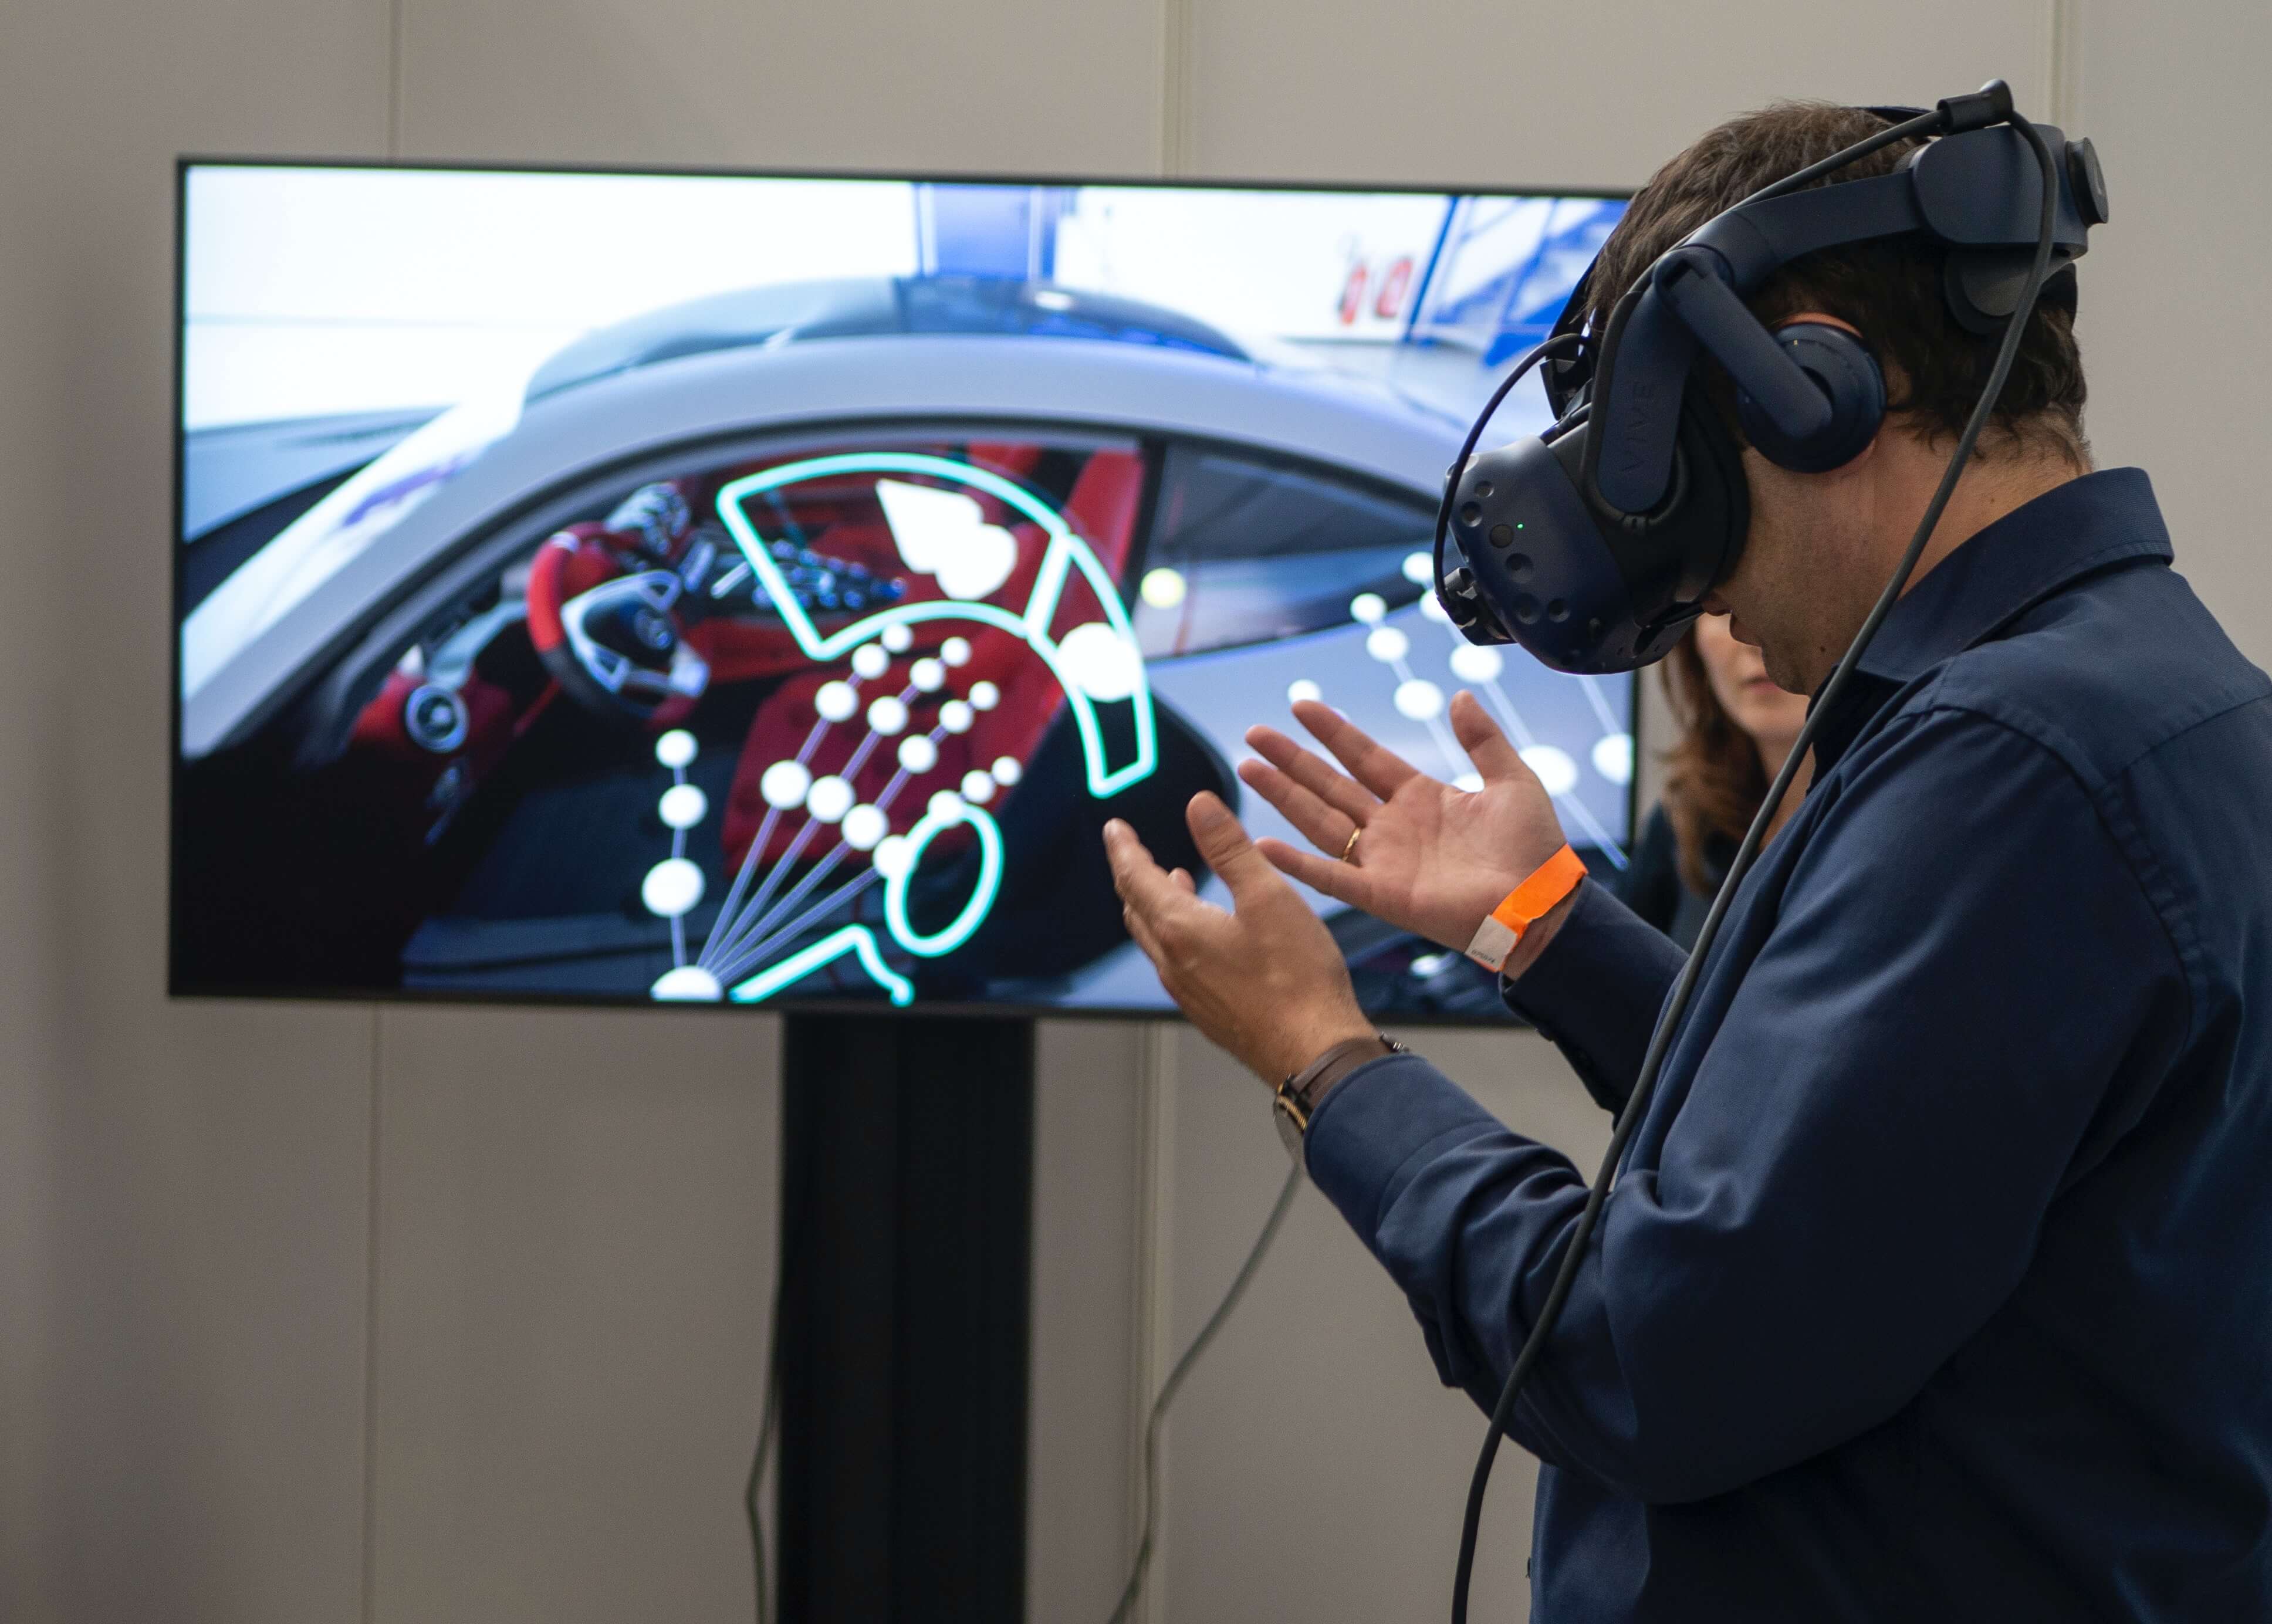 图片展示一位佩戴虚拟现实头盔的人正在体验模拟驾驶场景，双手伸出模仿操作，背景为大屏幕显示的汽车内饰。